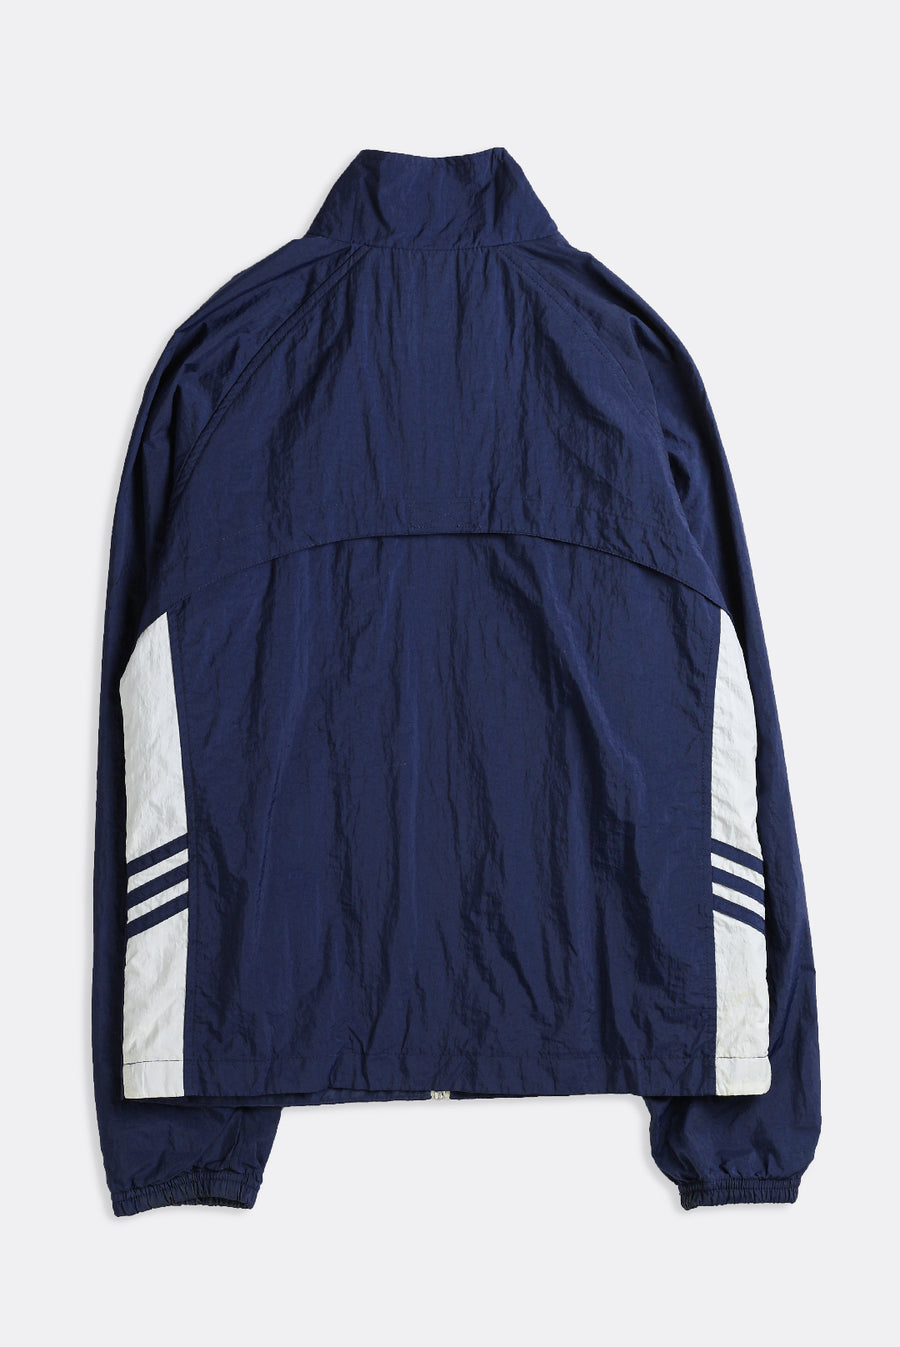 Vintage Adidas Windbreaker Jacket - S